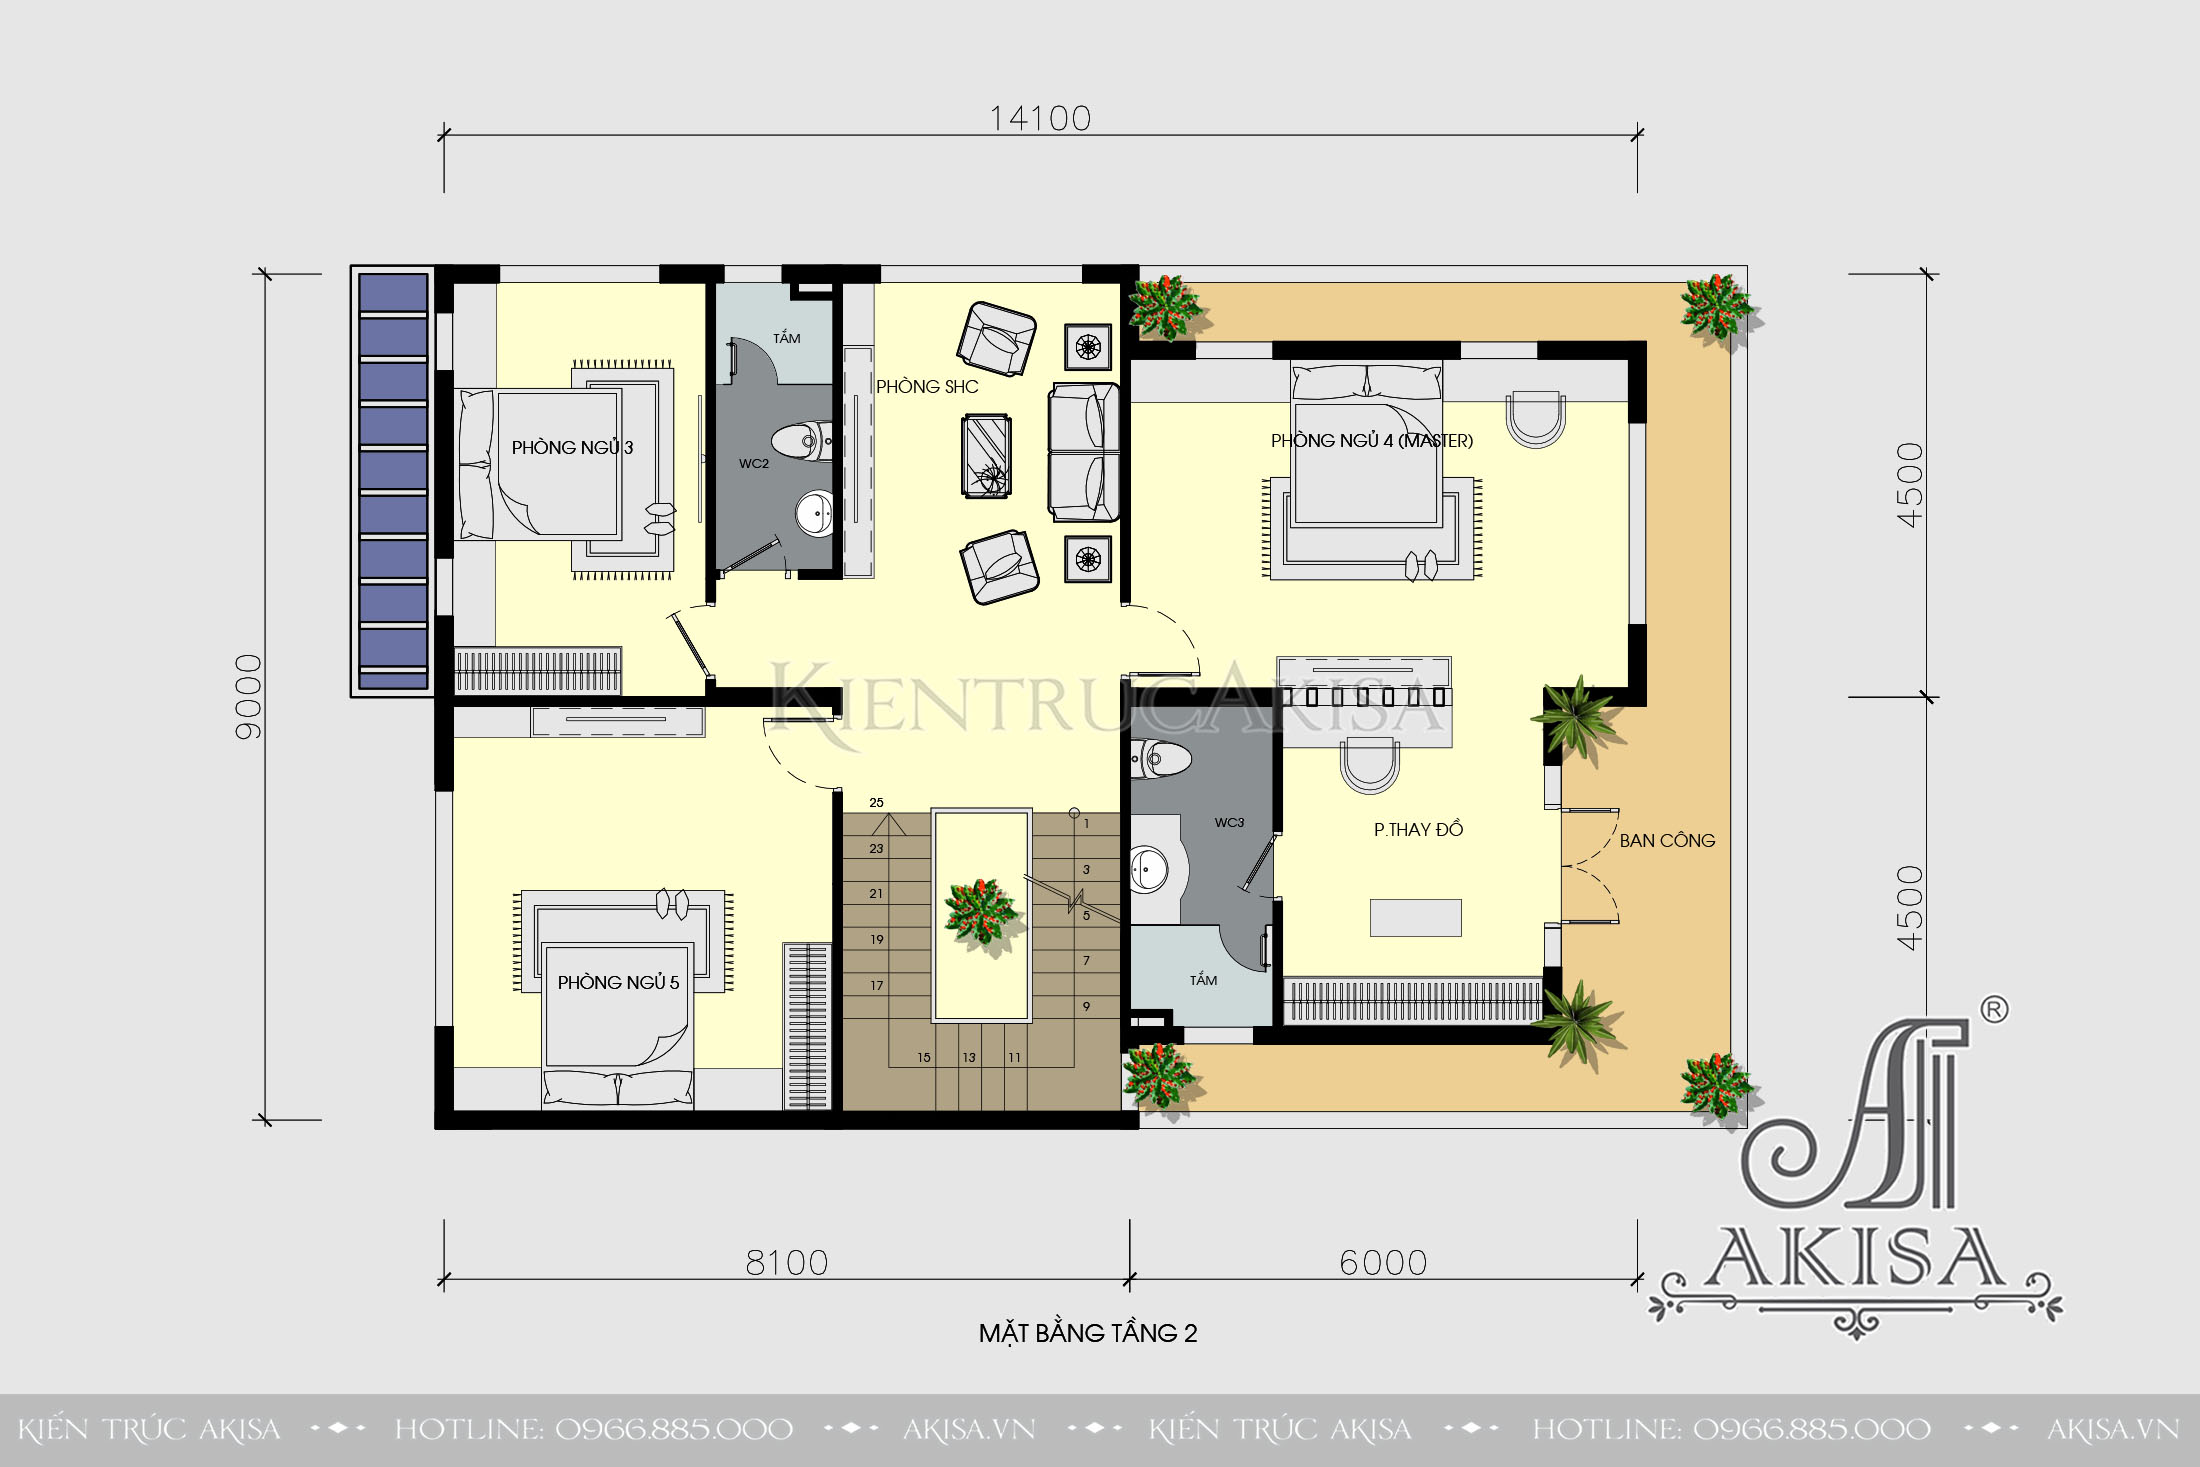 Bản vẽ biệt thự 3 tầng mái bằng khu vực tầng 2 gồm 3 phòng ngủ và 1 phòng sinh hoạt chung